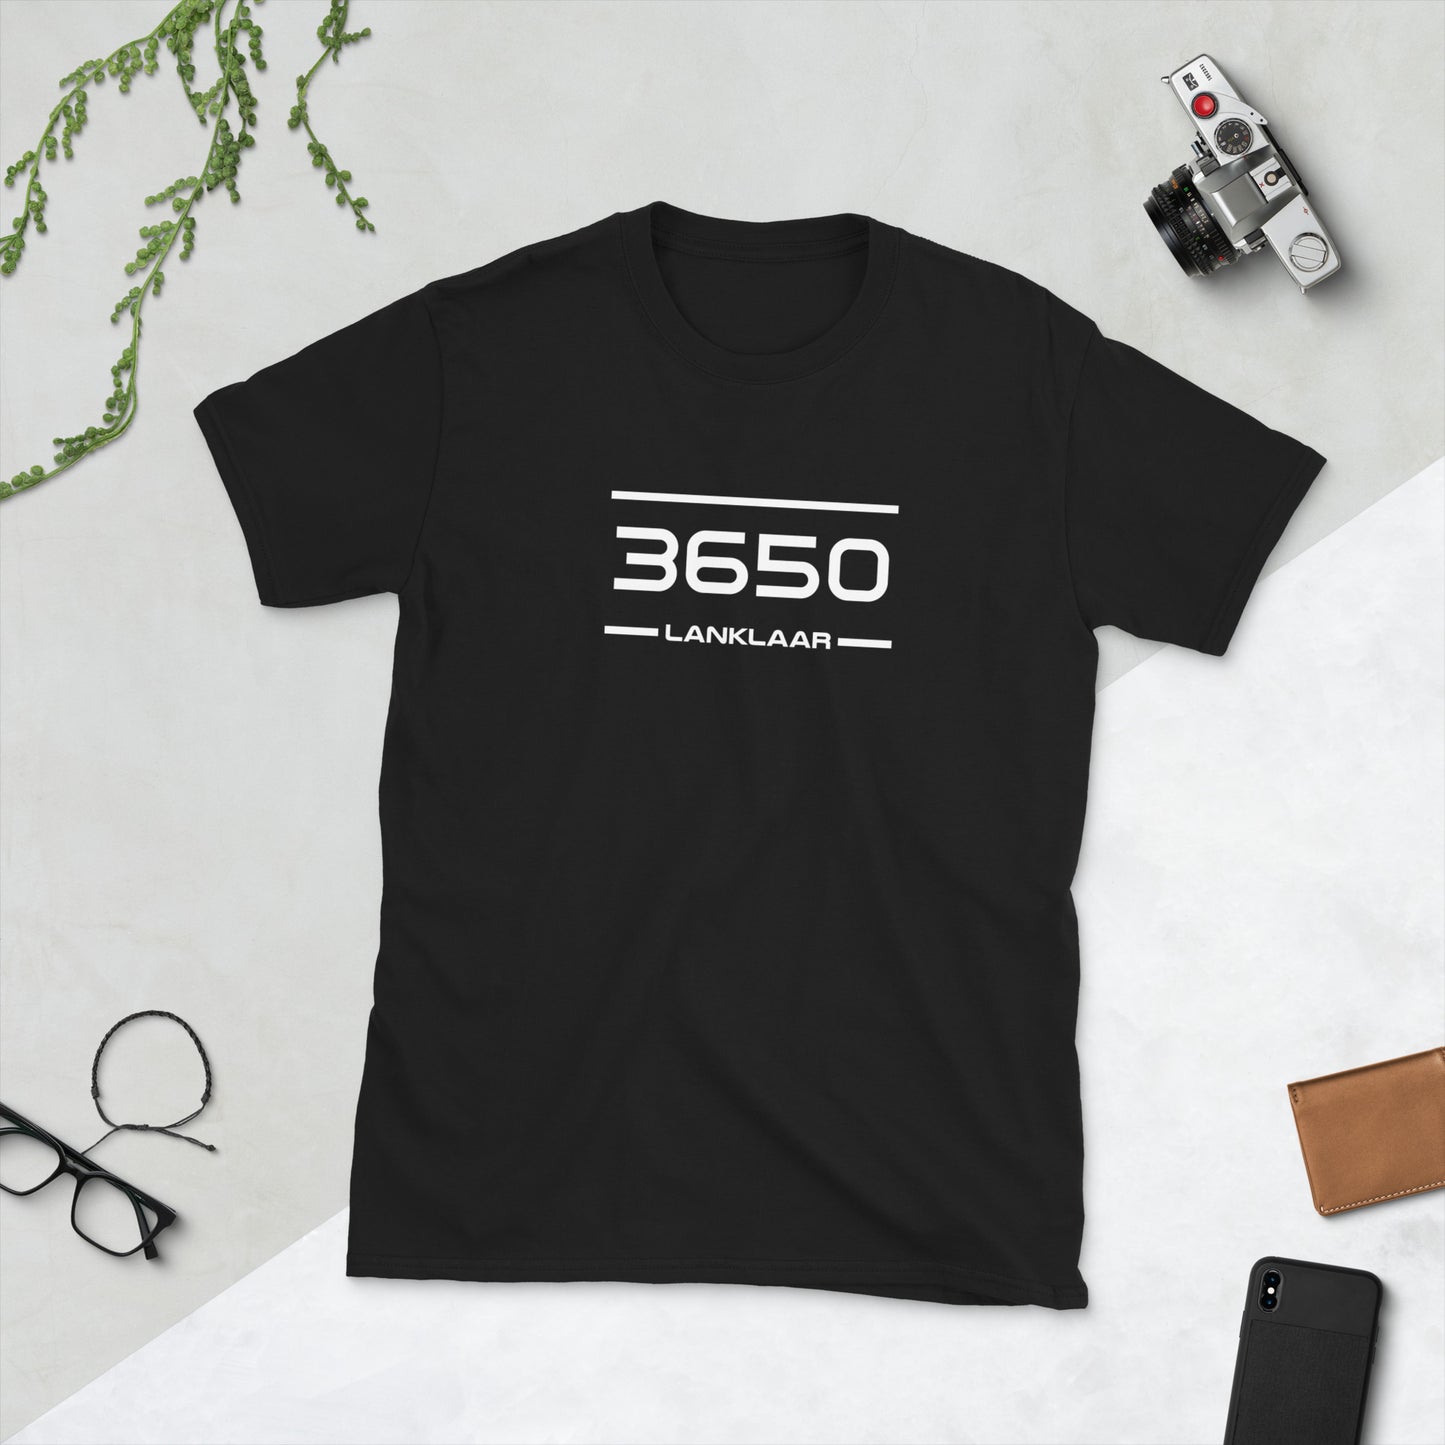 Tshirt - 3650 - Lanklaar